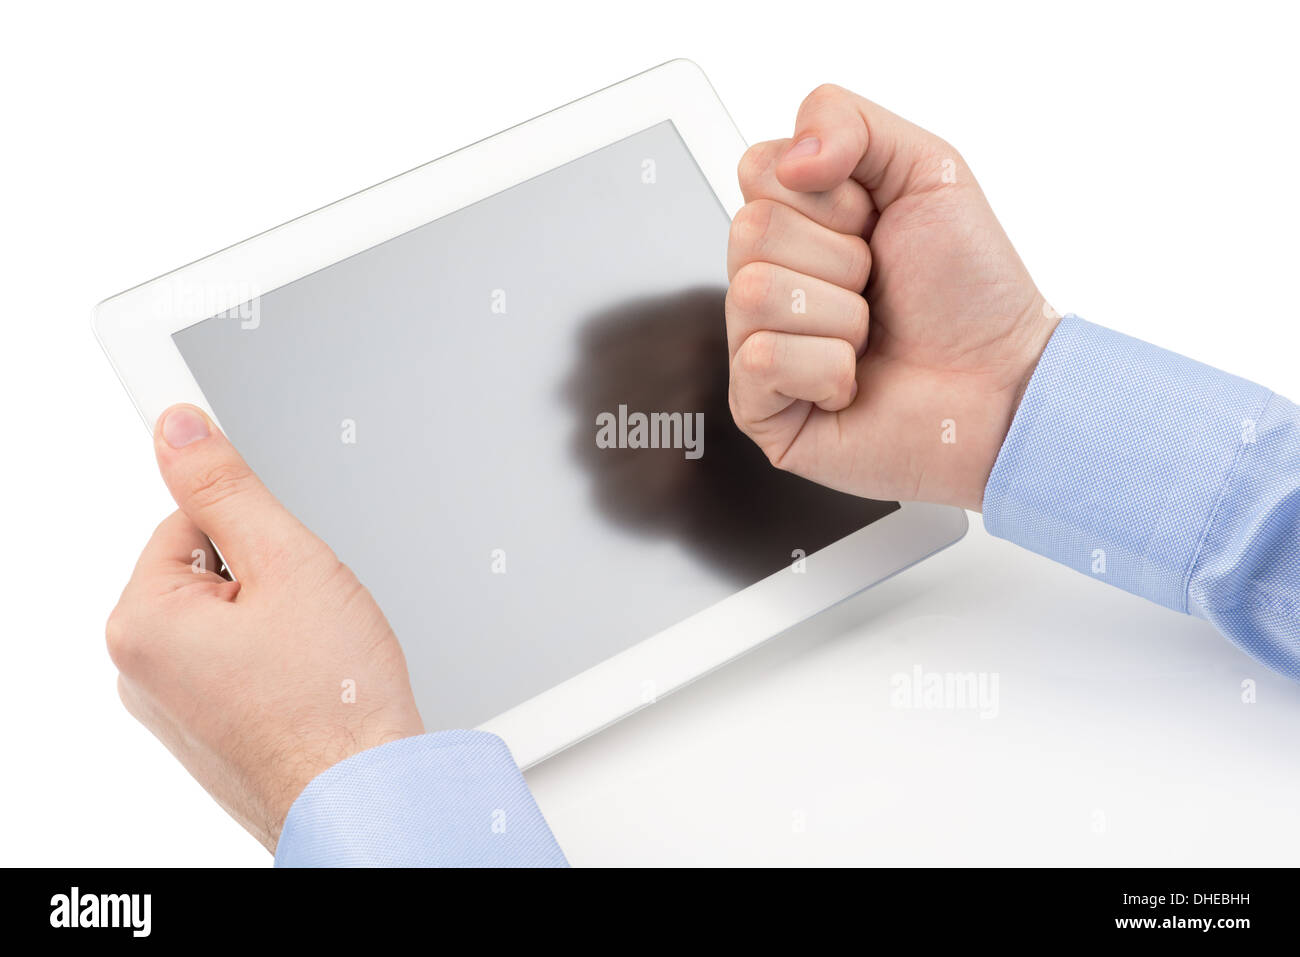 Mans Hände halten einen Tabletcomputer und bedroht von einer Faust in der Screenn auf einem weißen Hintergrund. Stockfoto